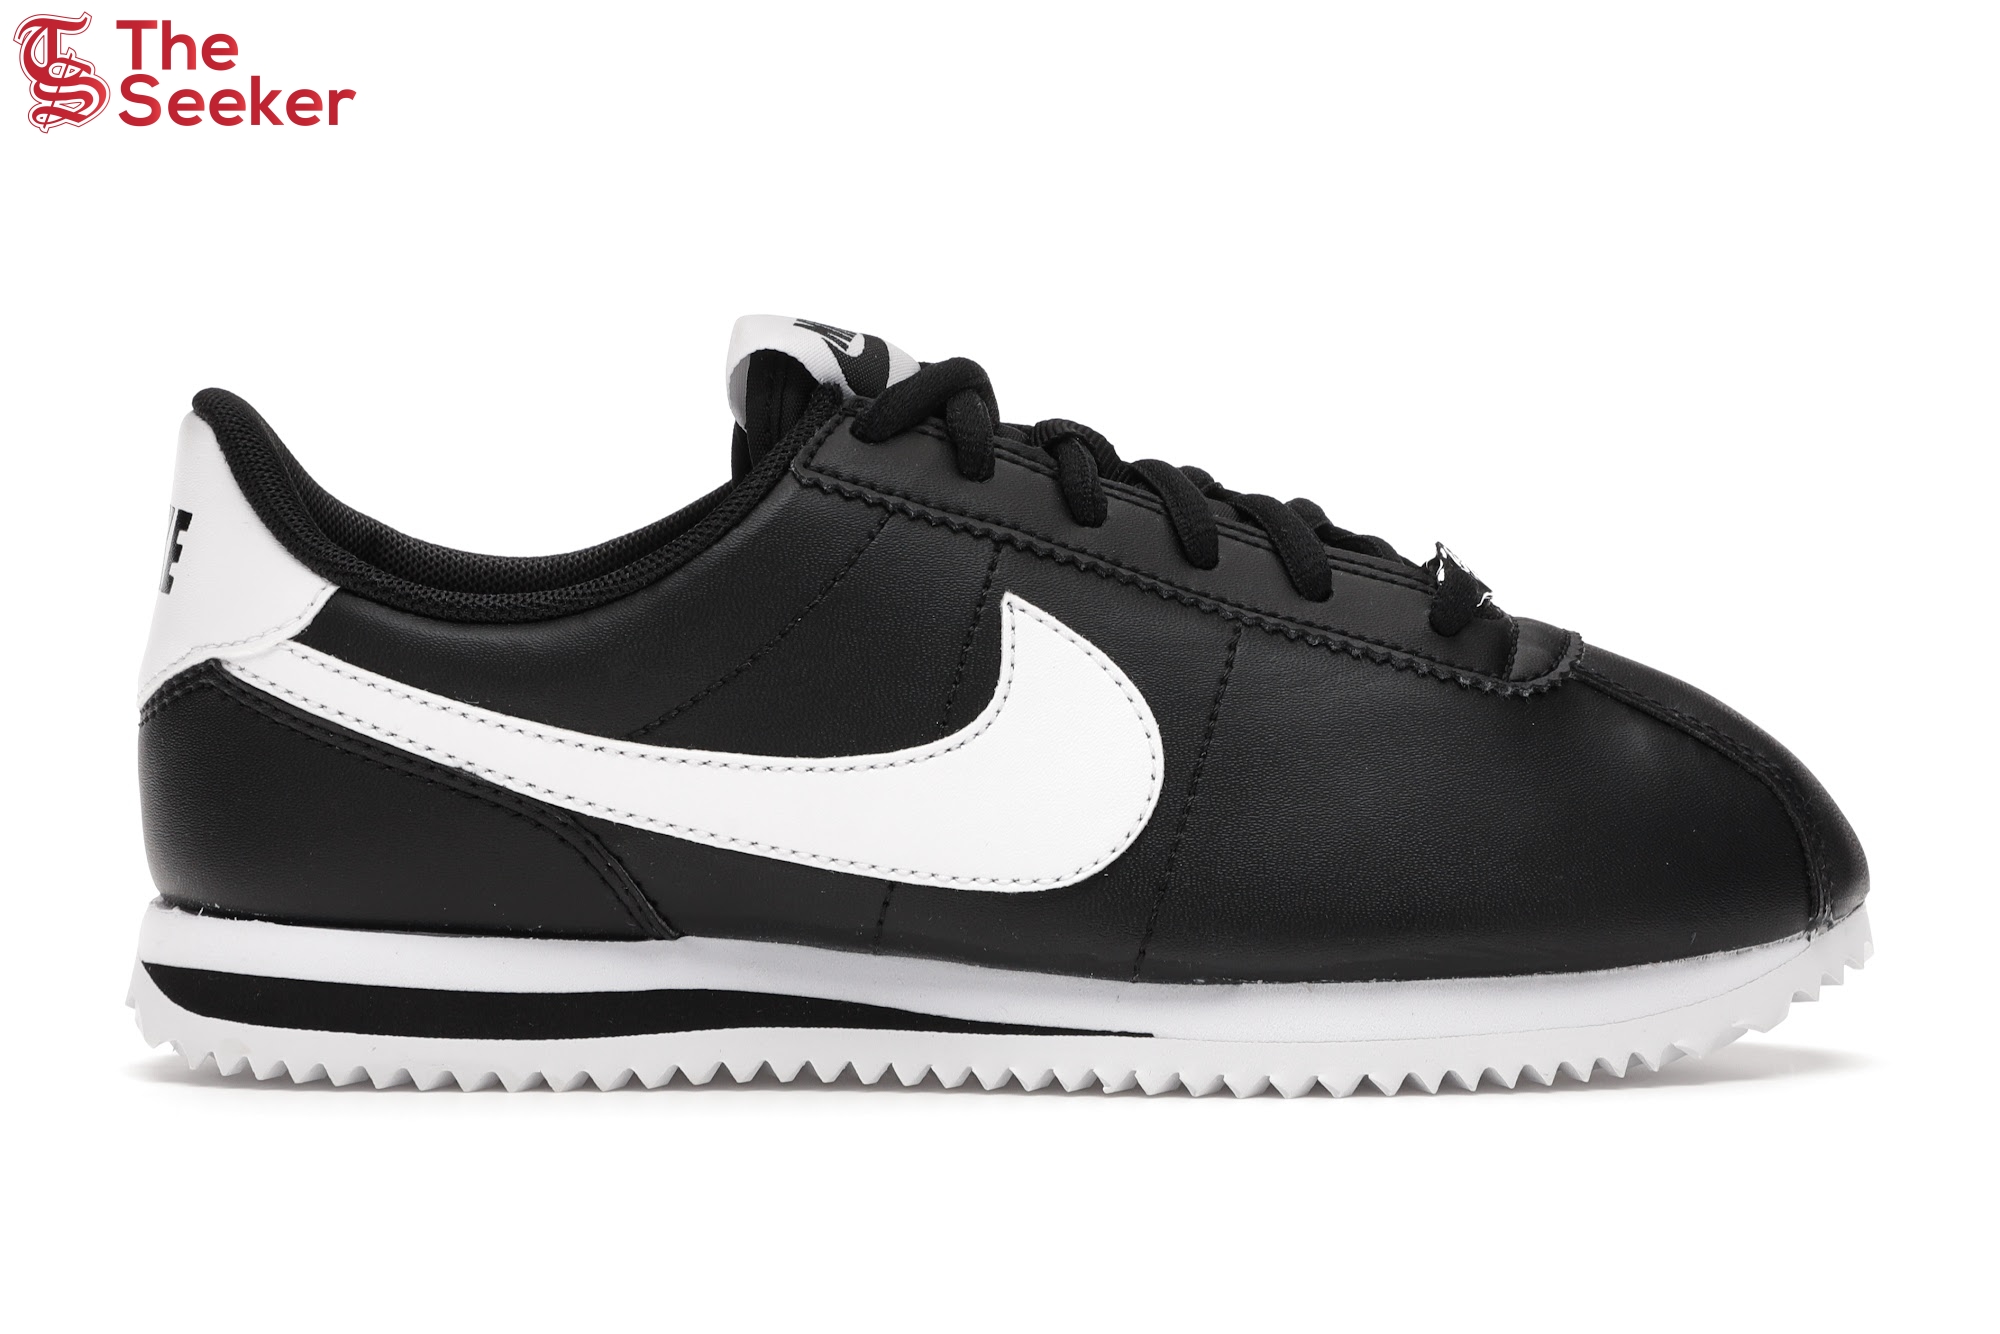 Nike Cortez Basic Leather Black White (GS)